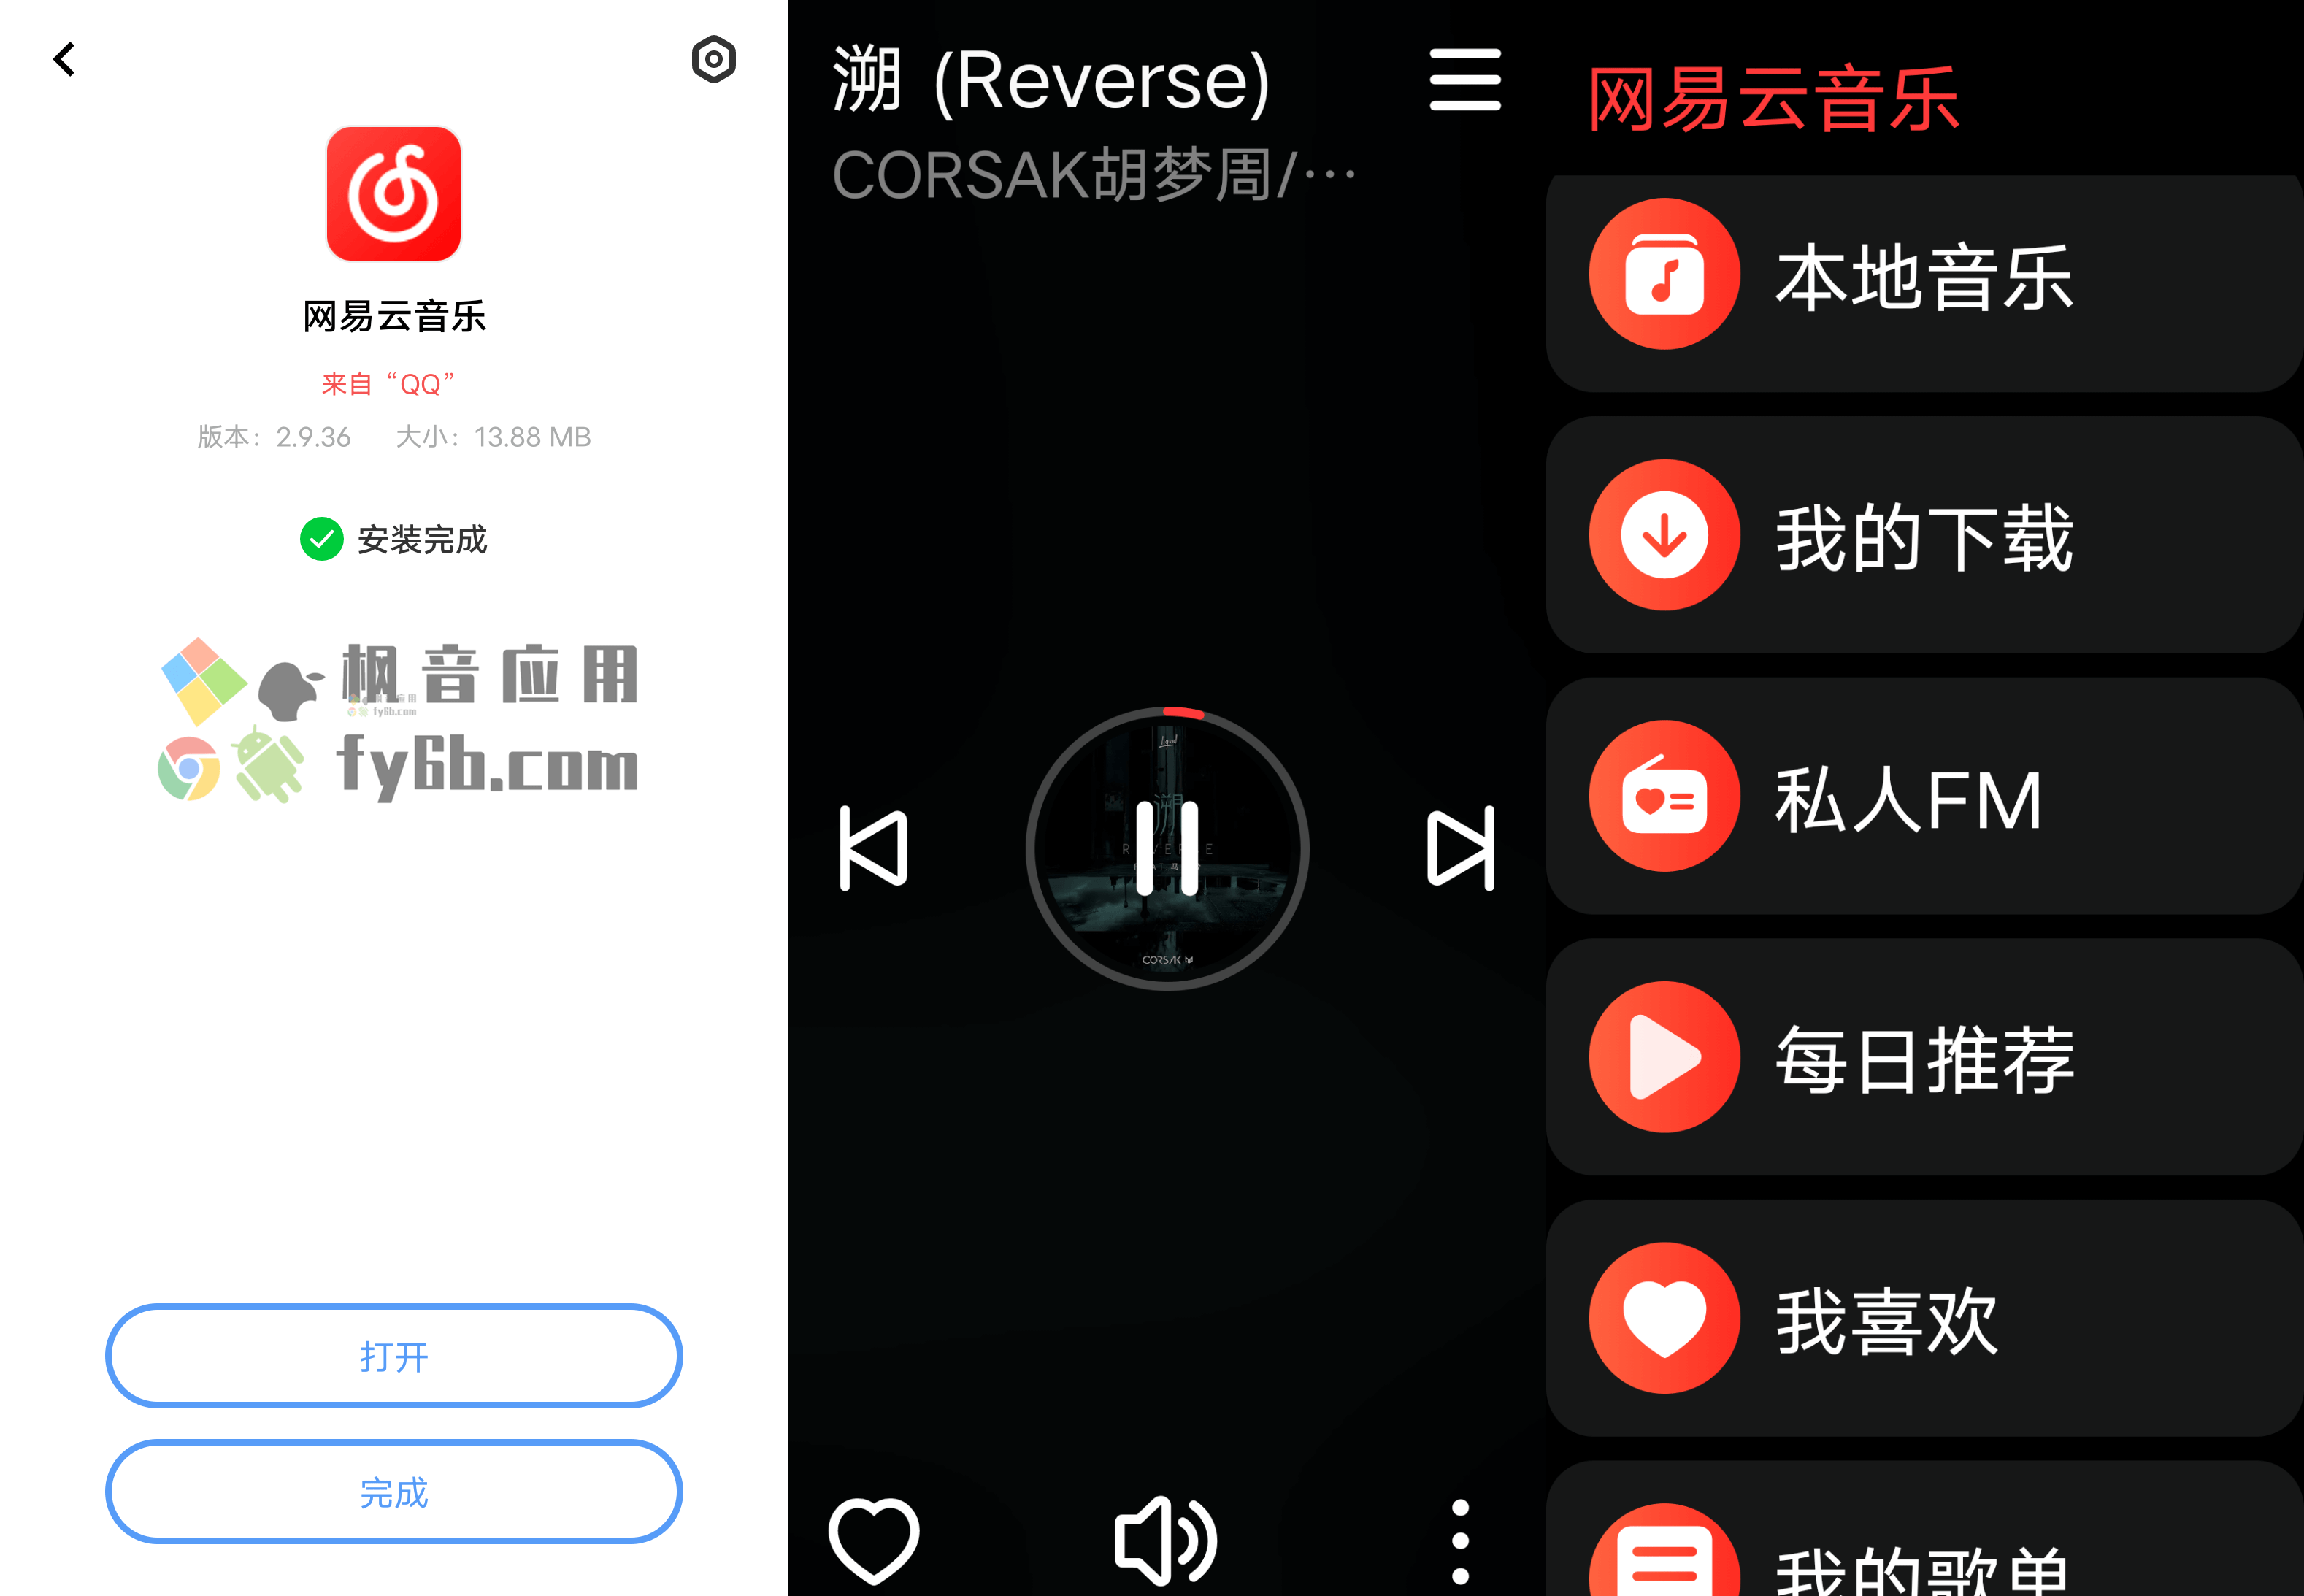 Android 网易云音乐_v2.9.36 手表版